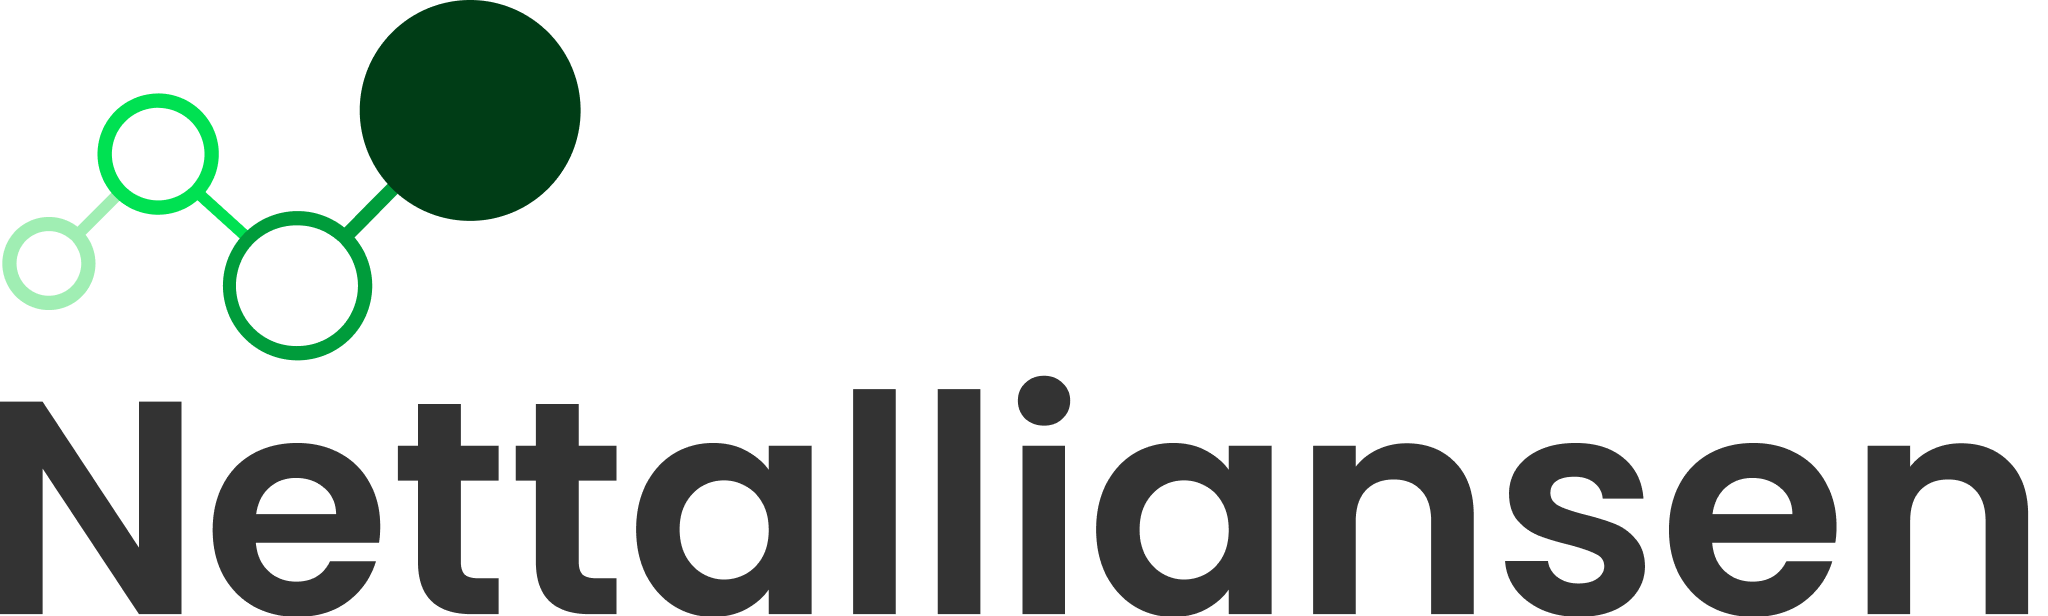 Bilde av logoen til Nettalliansen